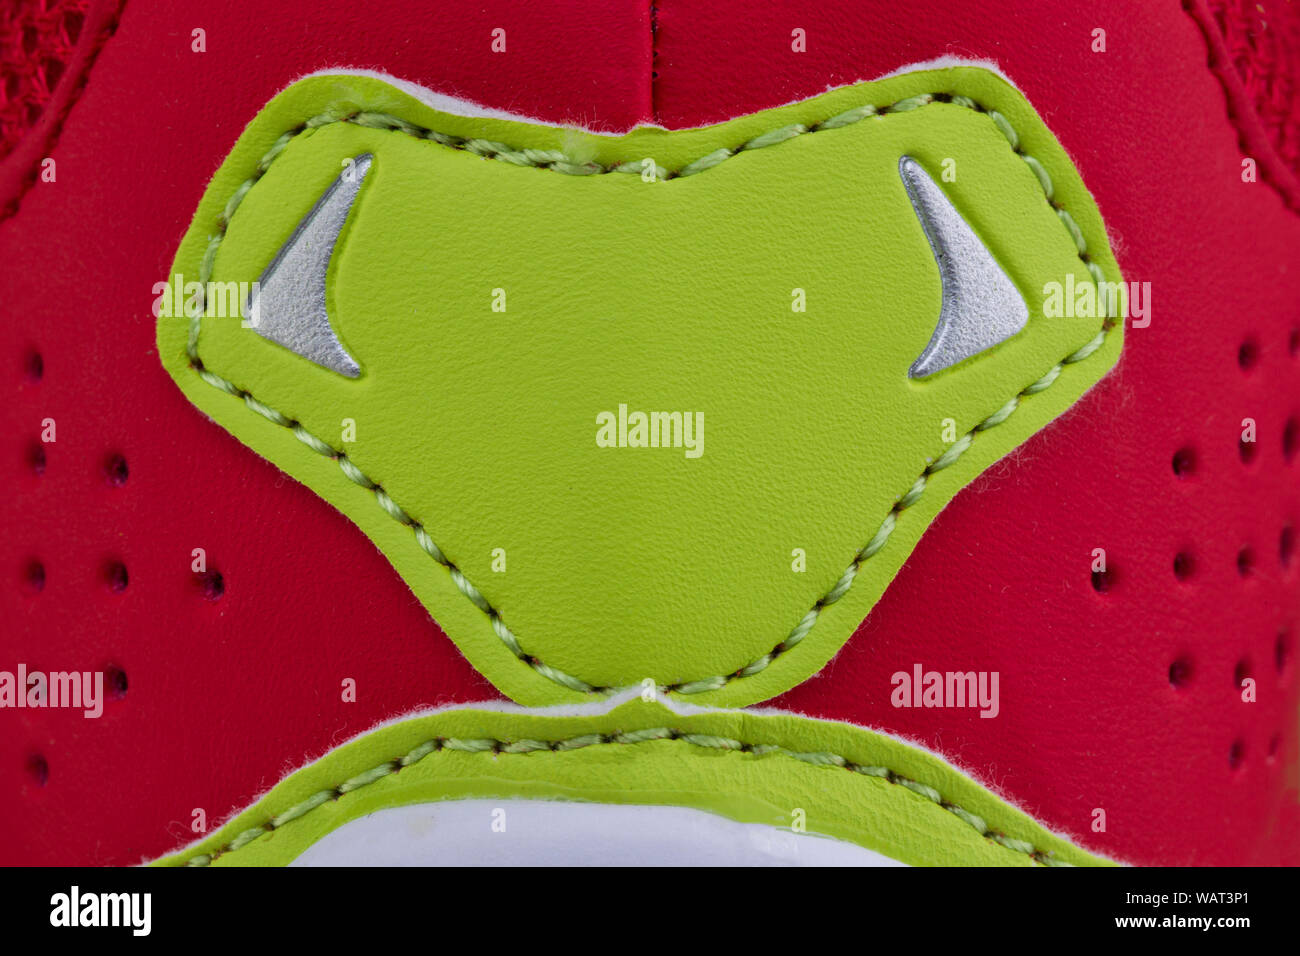 Frammento di un panno rosso sneaker con una striscia verde. La consistenza del materiale di calzature sportive Foto Stock